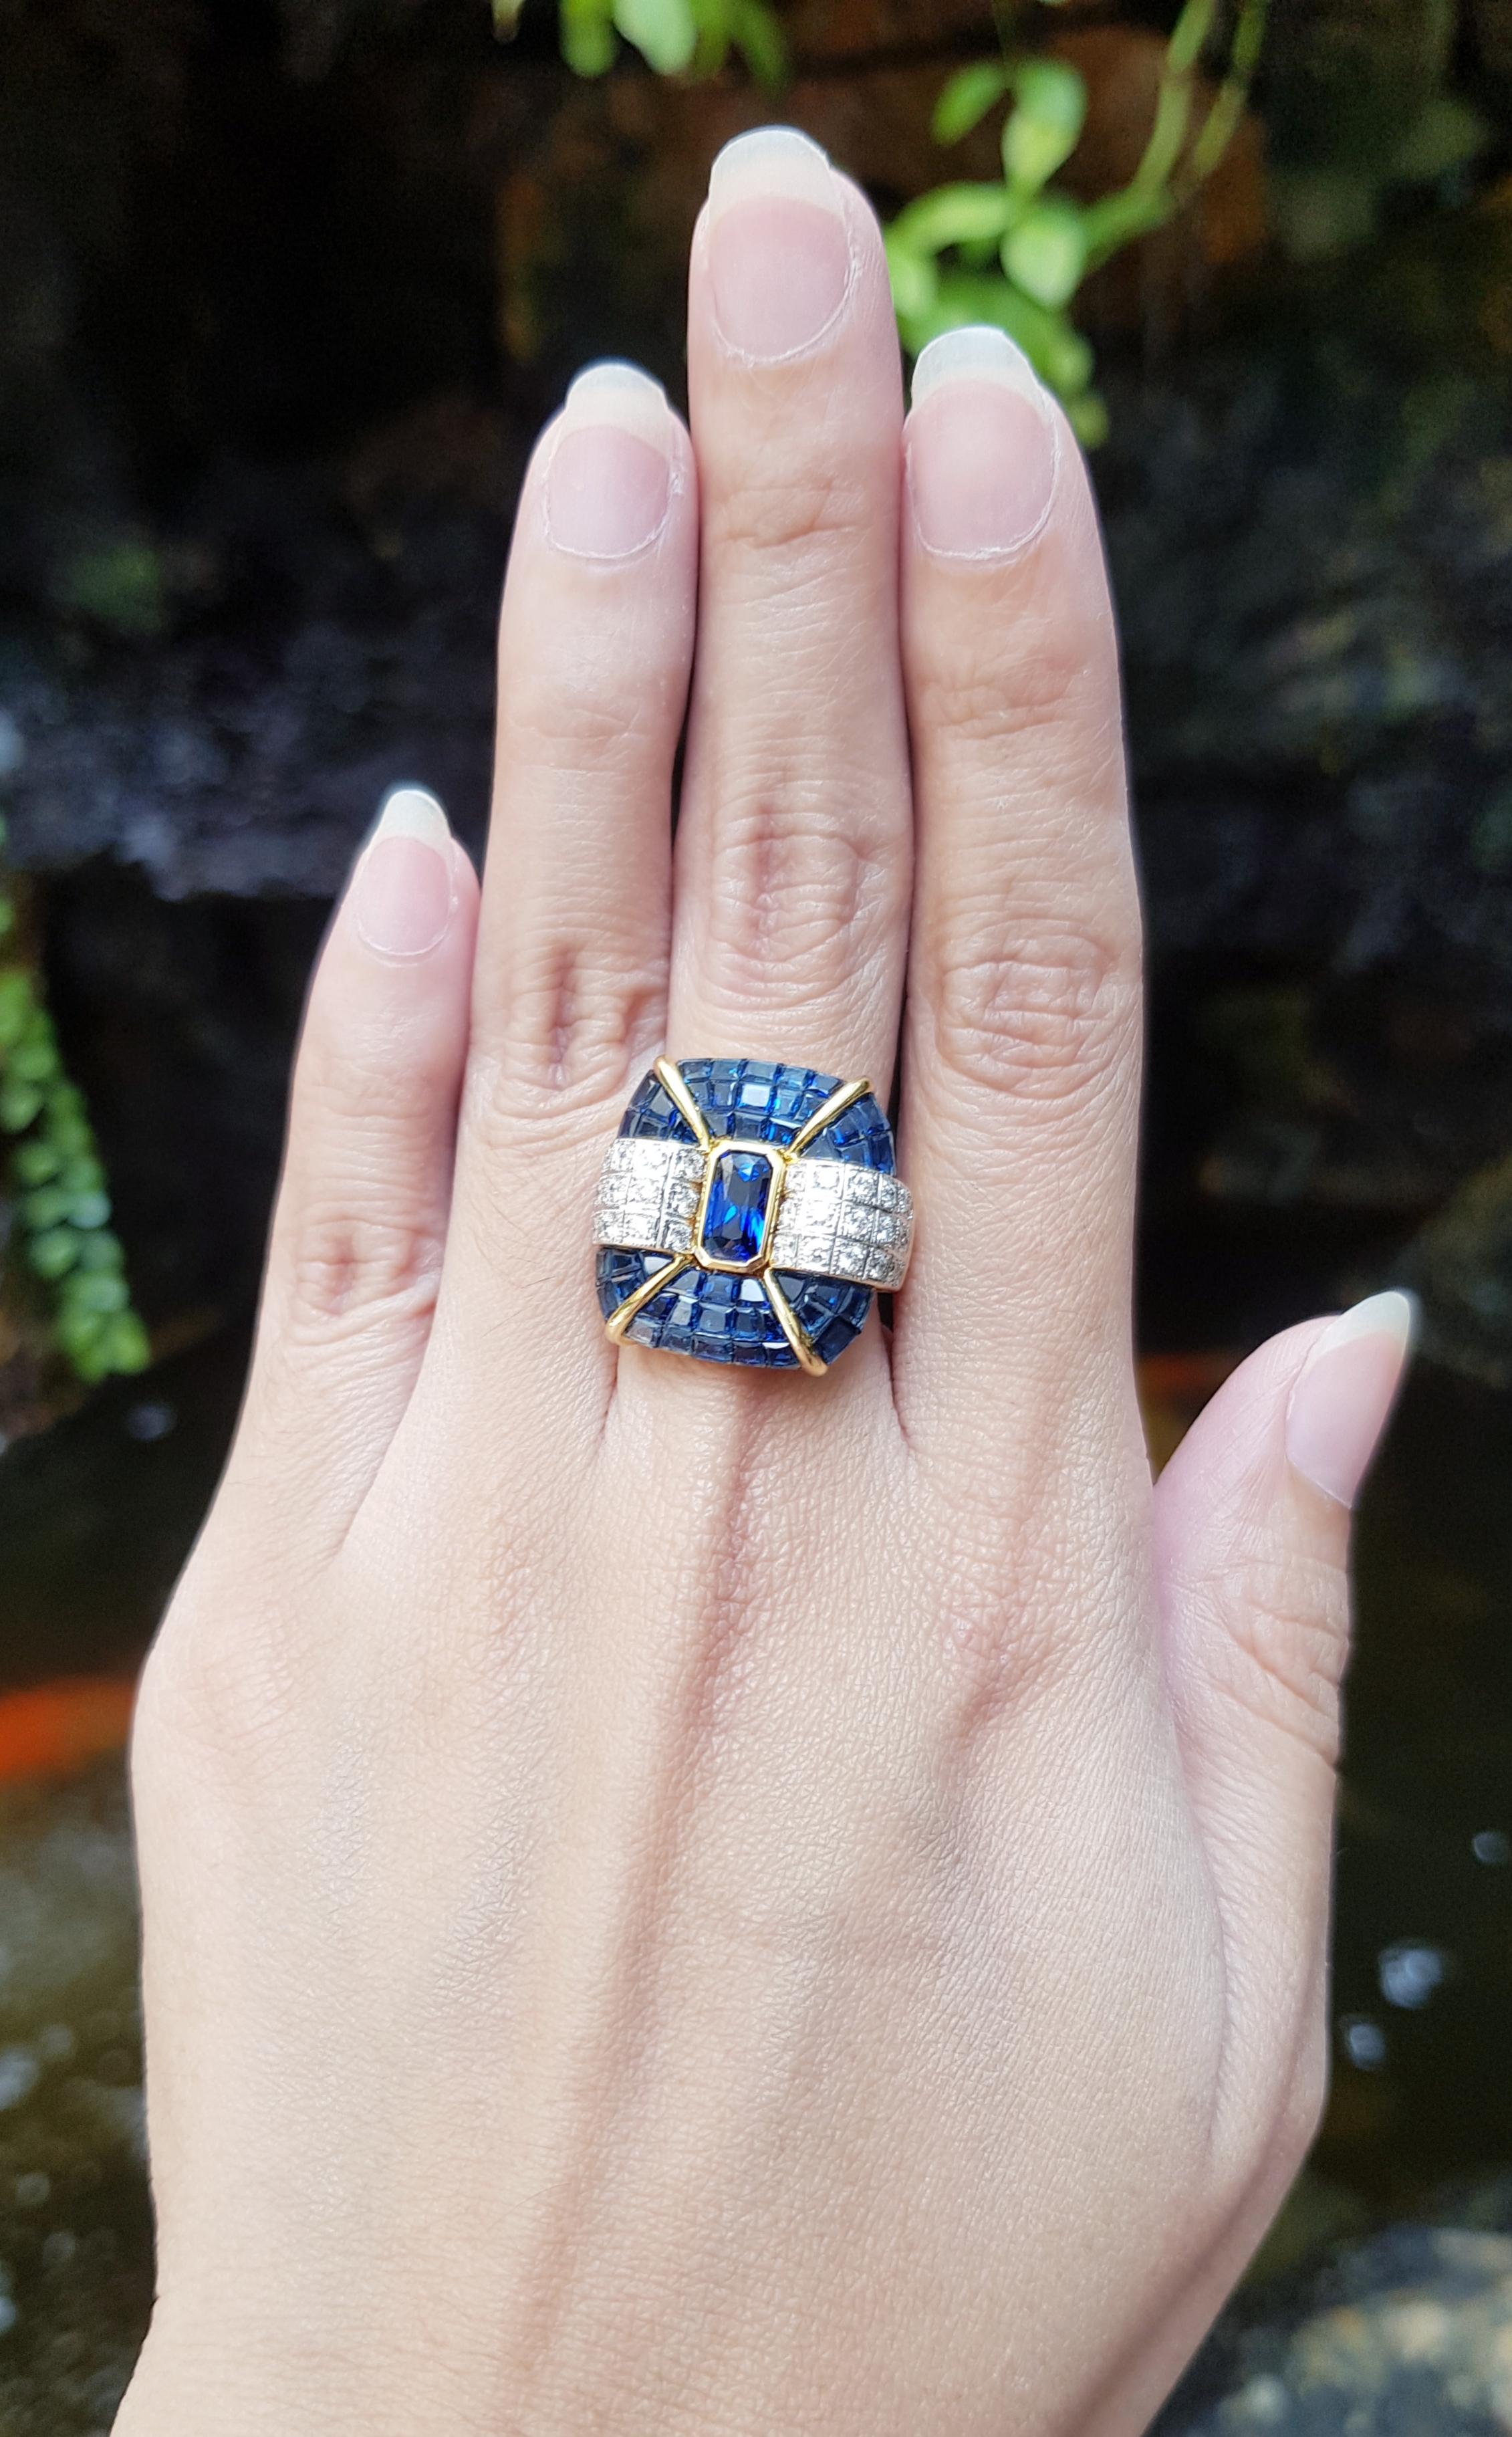 Blue Sapphire 1.16 carats, Blue Sapphire 8.26 carats and Diamond 0.62 carat Ring set in 18 Karat Gold Settings

Width:  2.1 cm 
Length: 2.1 cm
Ring Size: 53
Total Weight: 17.73 grams


